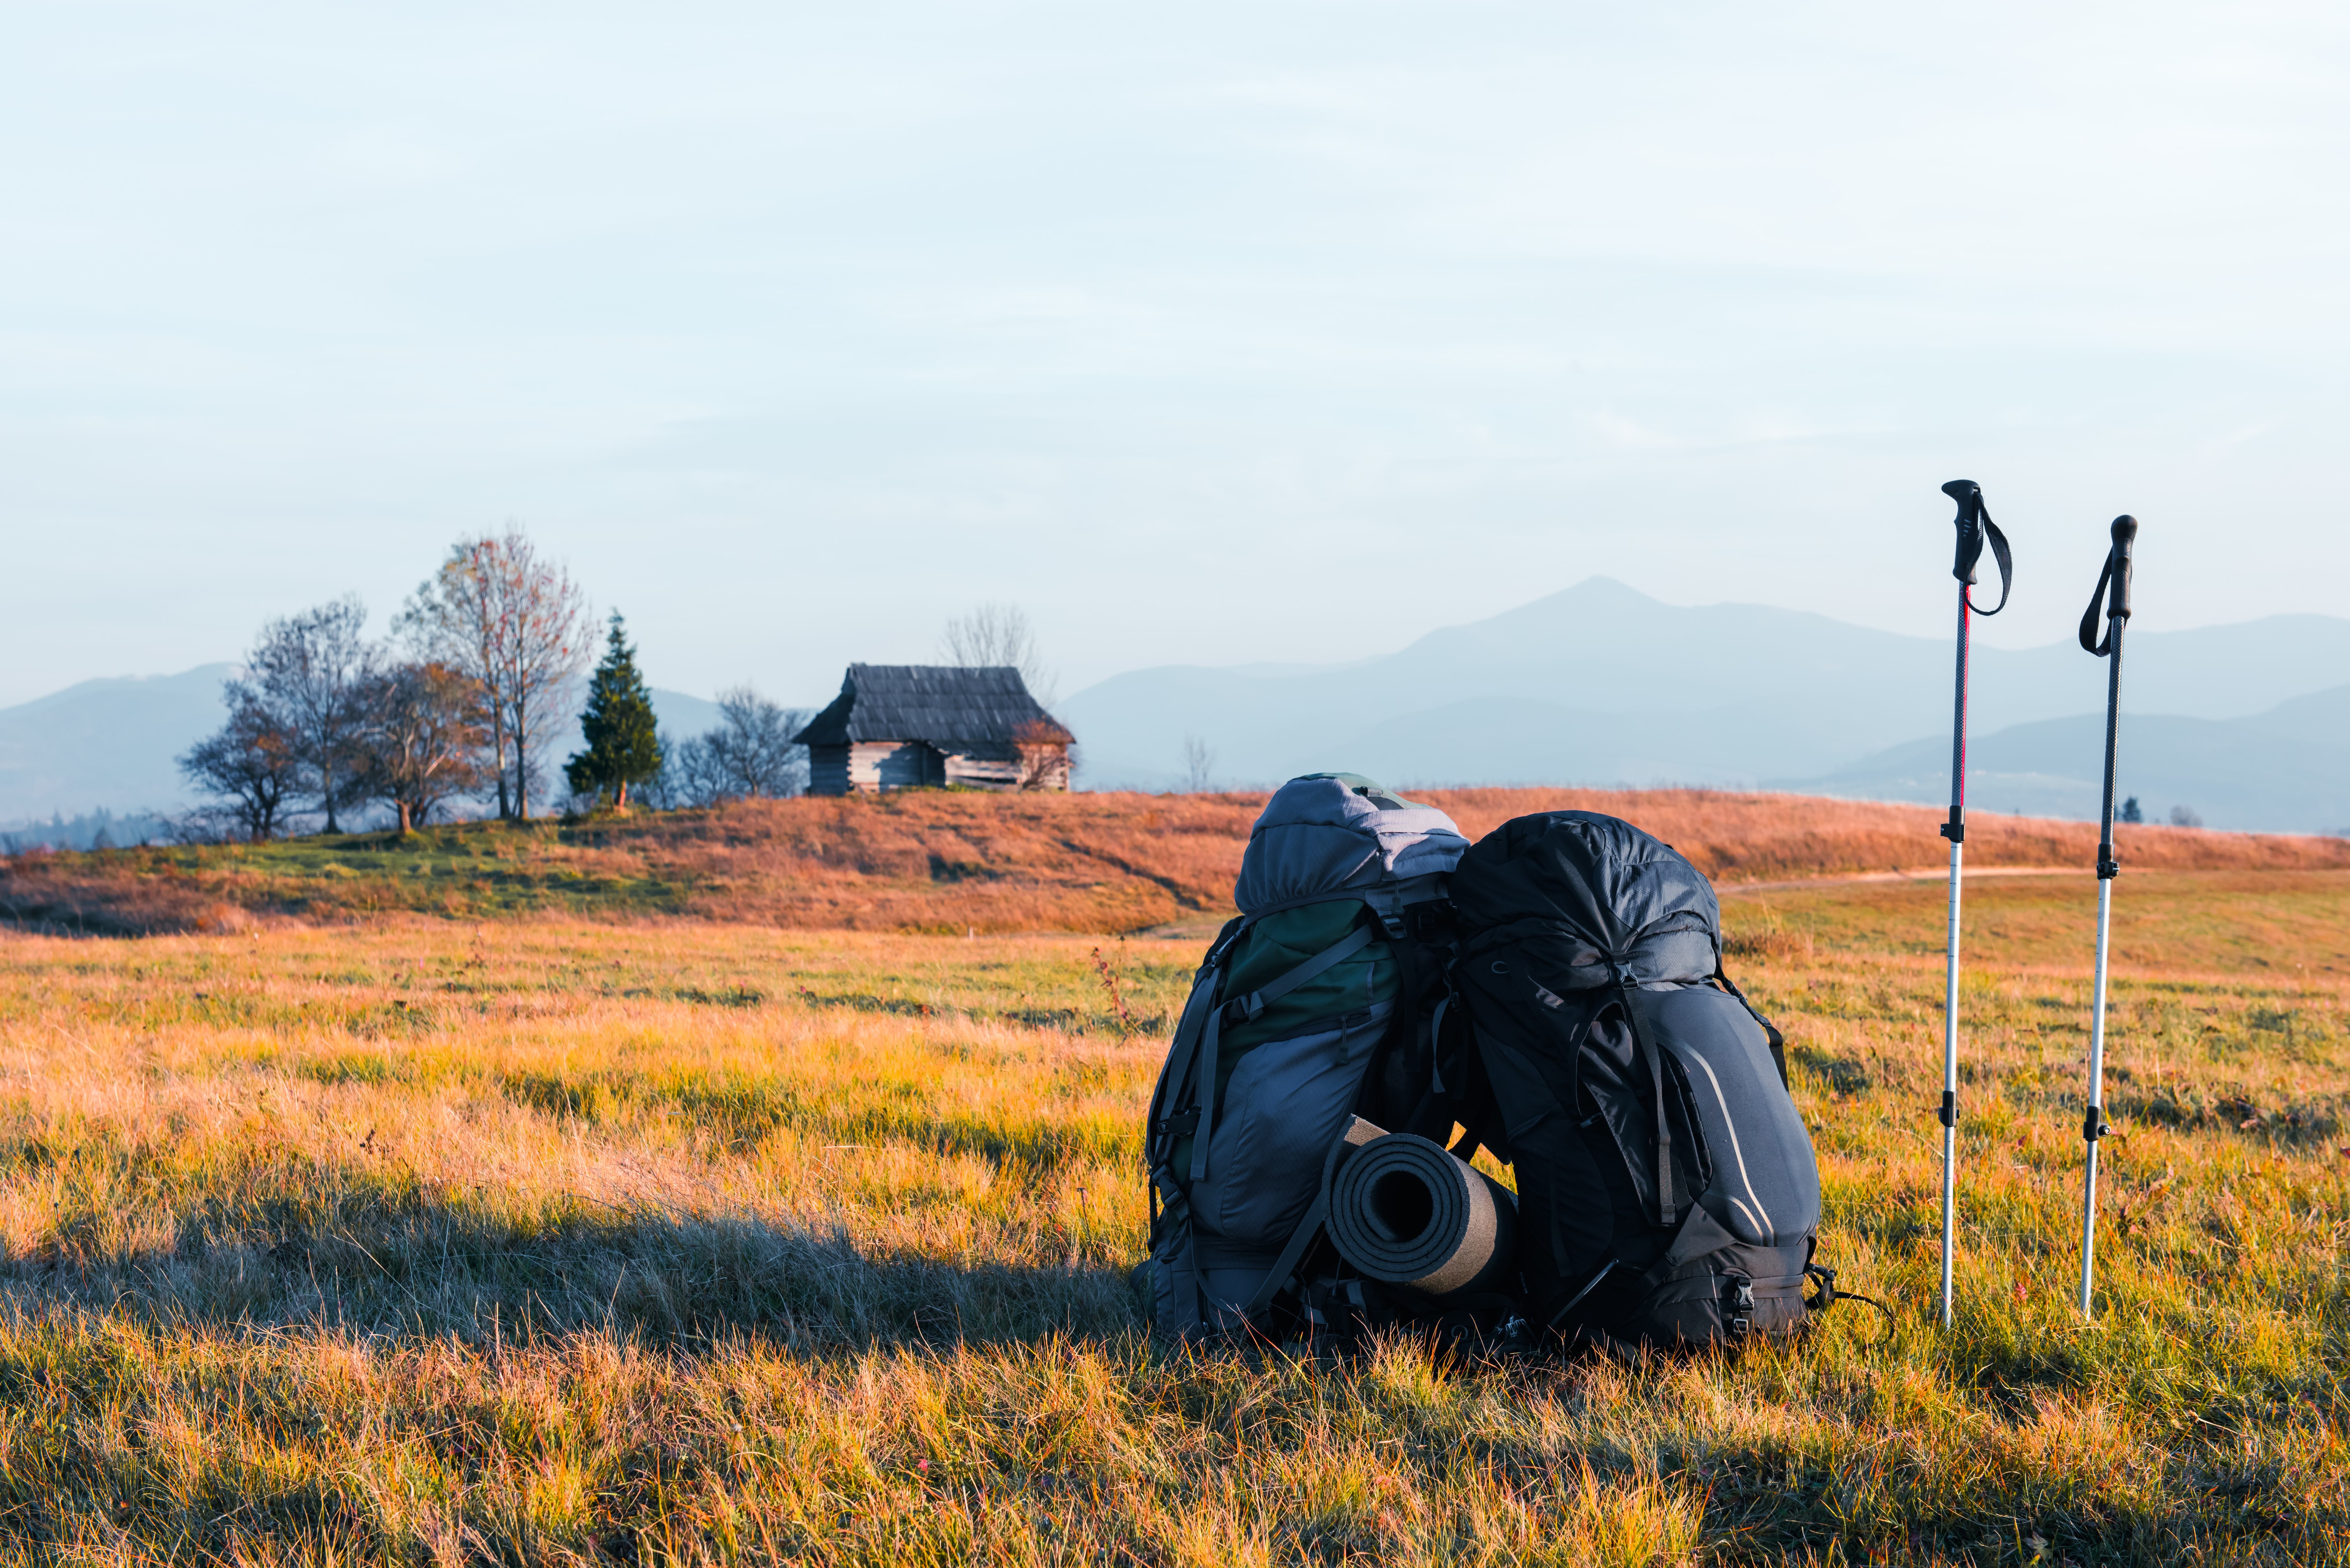 Autumn Camping Magic: Swiss Camping Equipment, deux sacs à dos dans la vallée des montagnes YF7PC6J - Swiss Made Direct - camping suisse, équipement de camping suisse, camping d'automne, couverture militaire suisse, équipement de camping